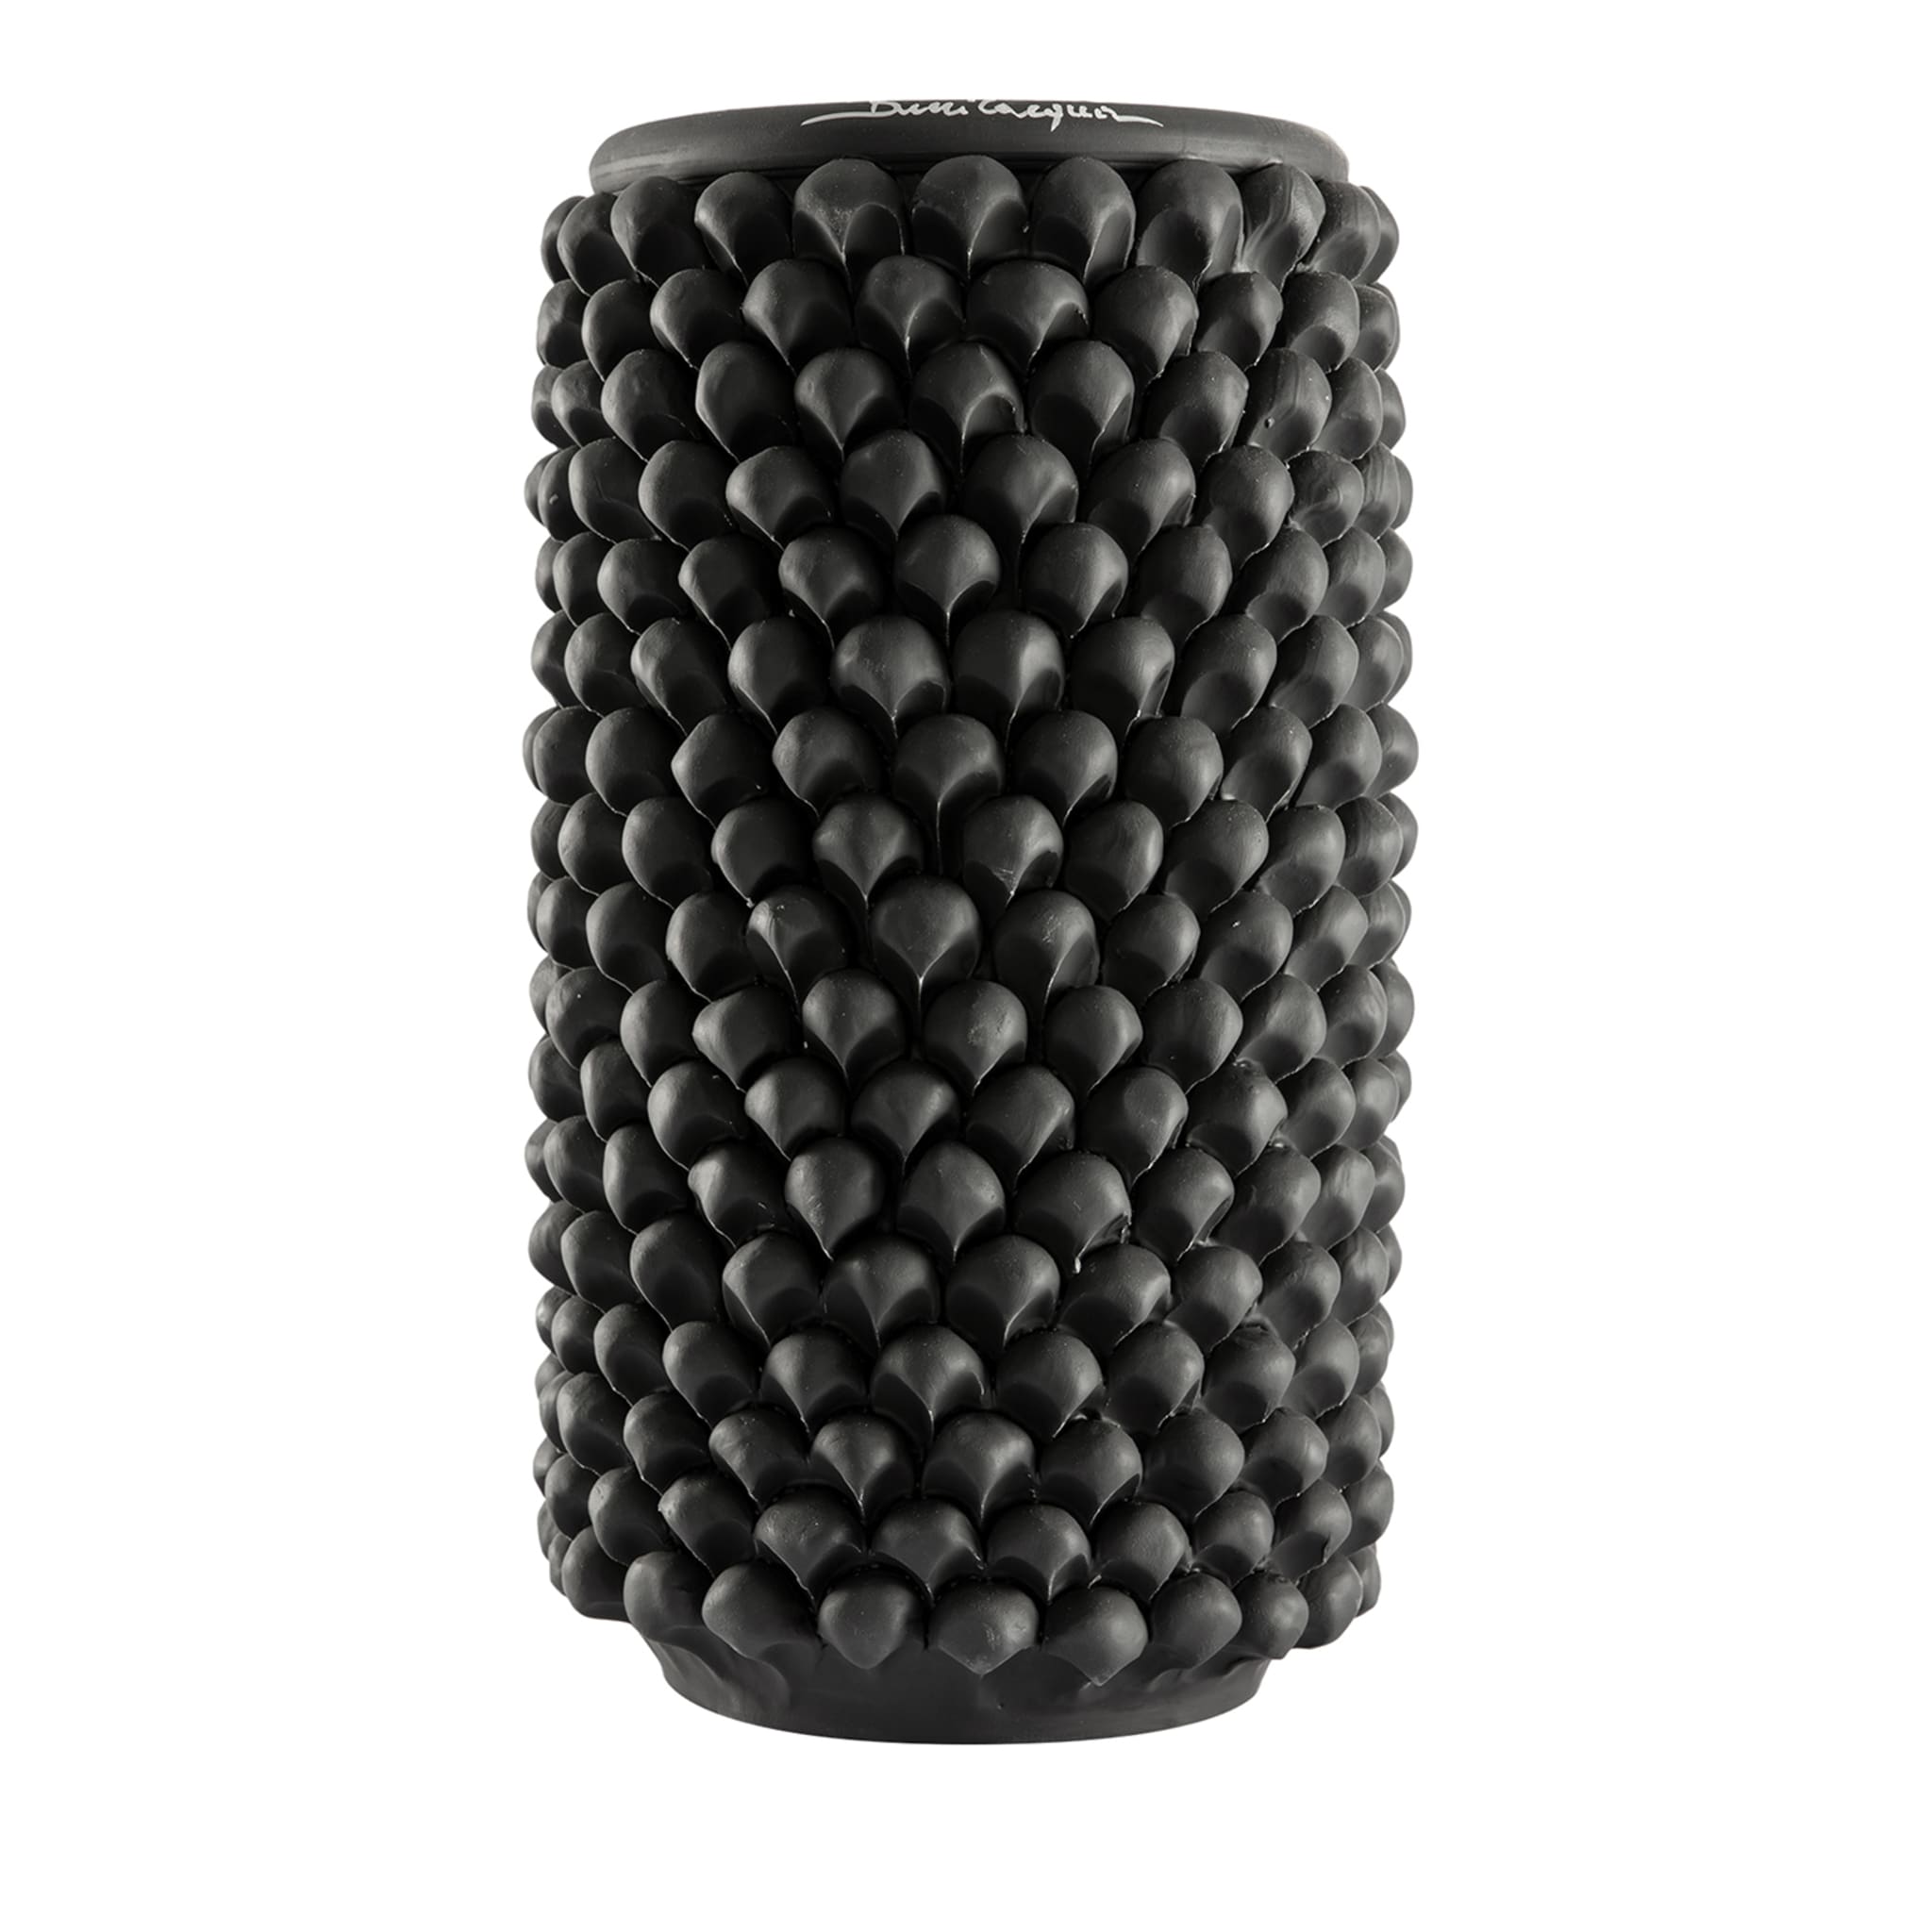 Vase cylindrique en céramique noire - Vue principale